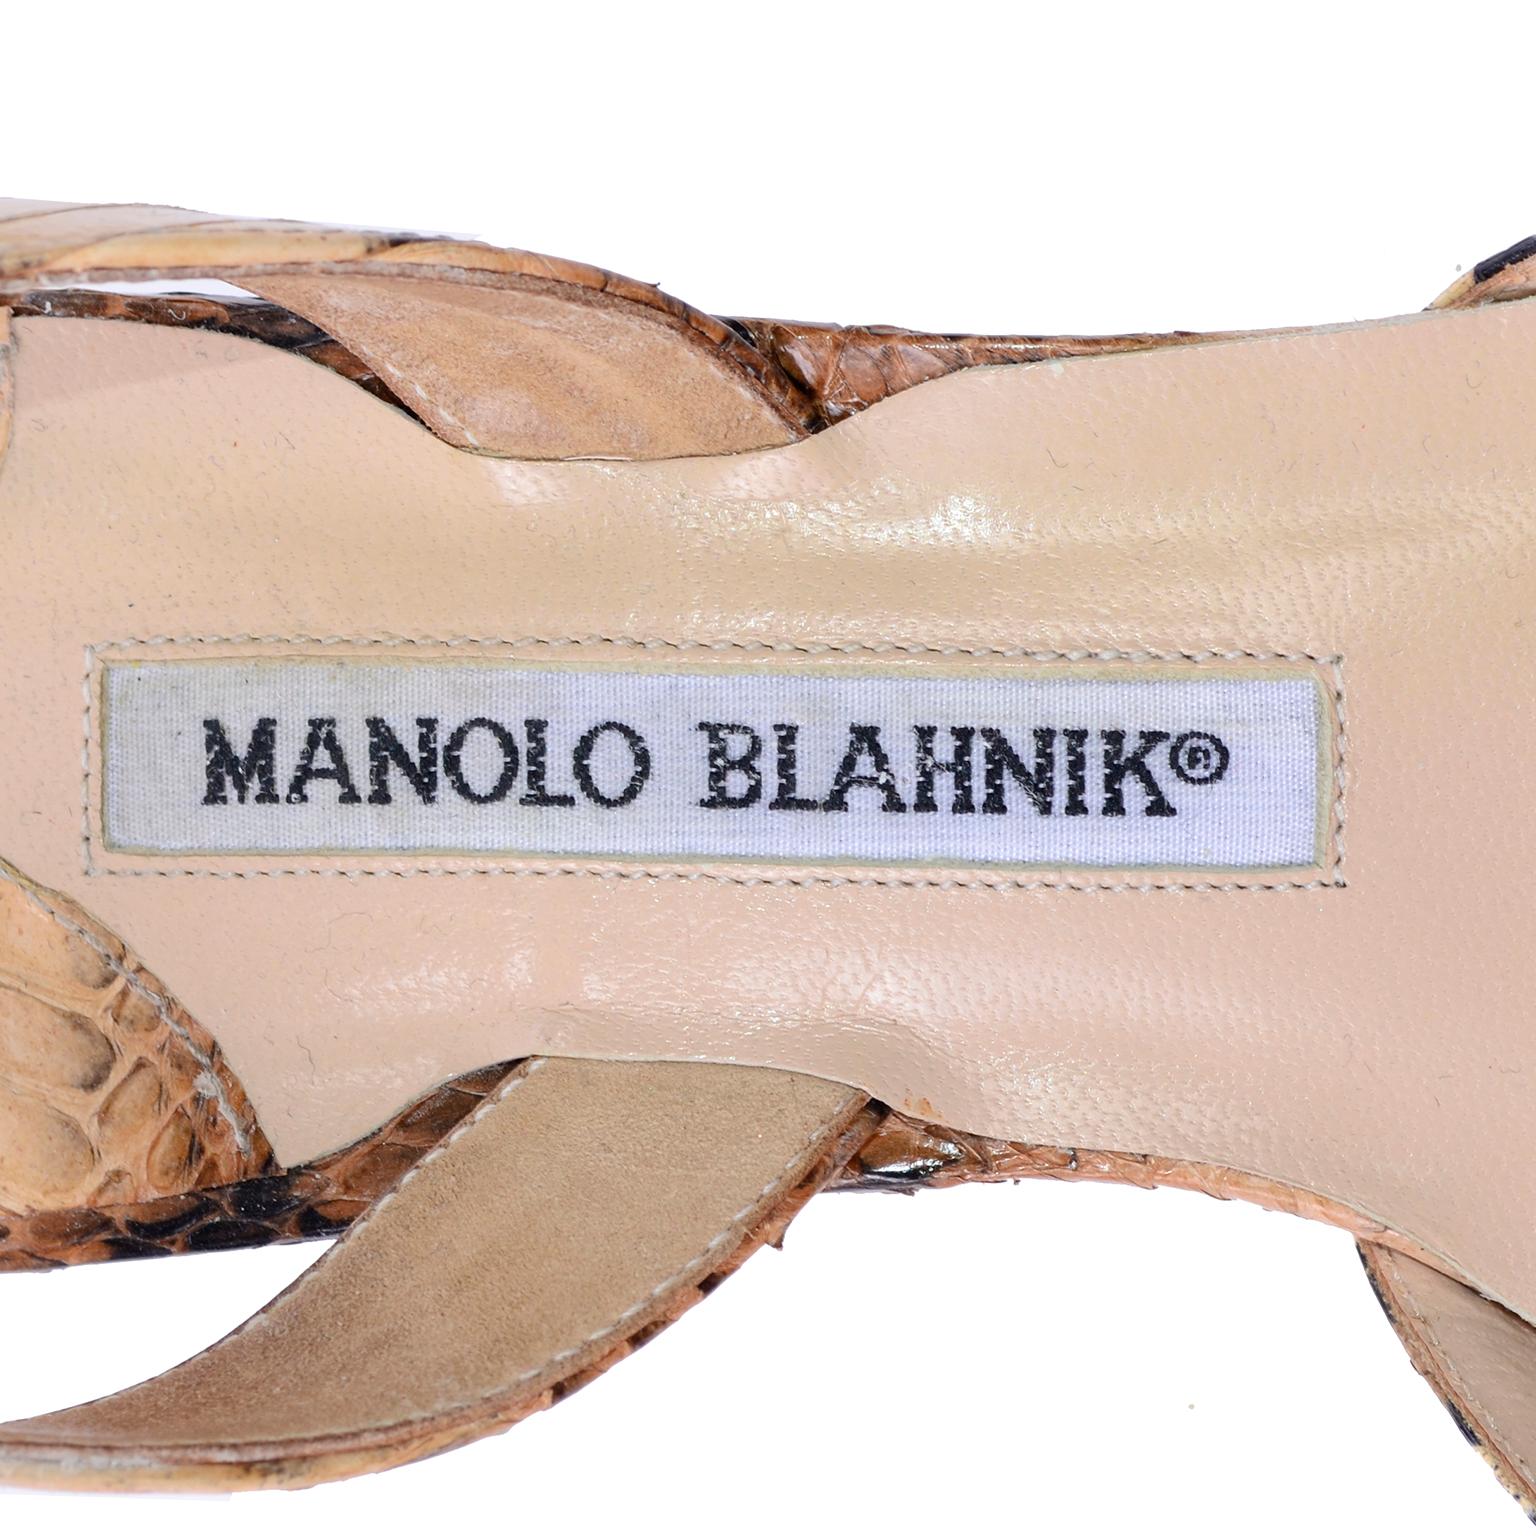 Manolo Blahnik Shoes in Size 37.5 Leopard Print Snakeskin Slingback Heels 2